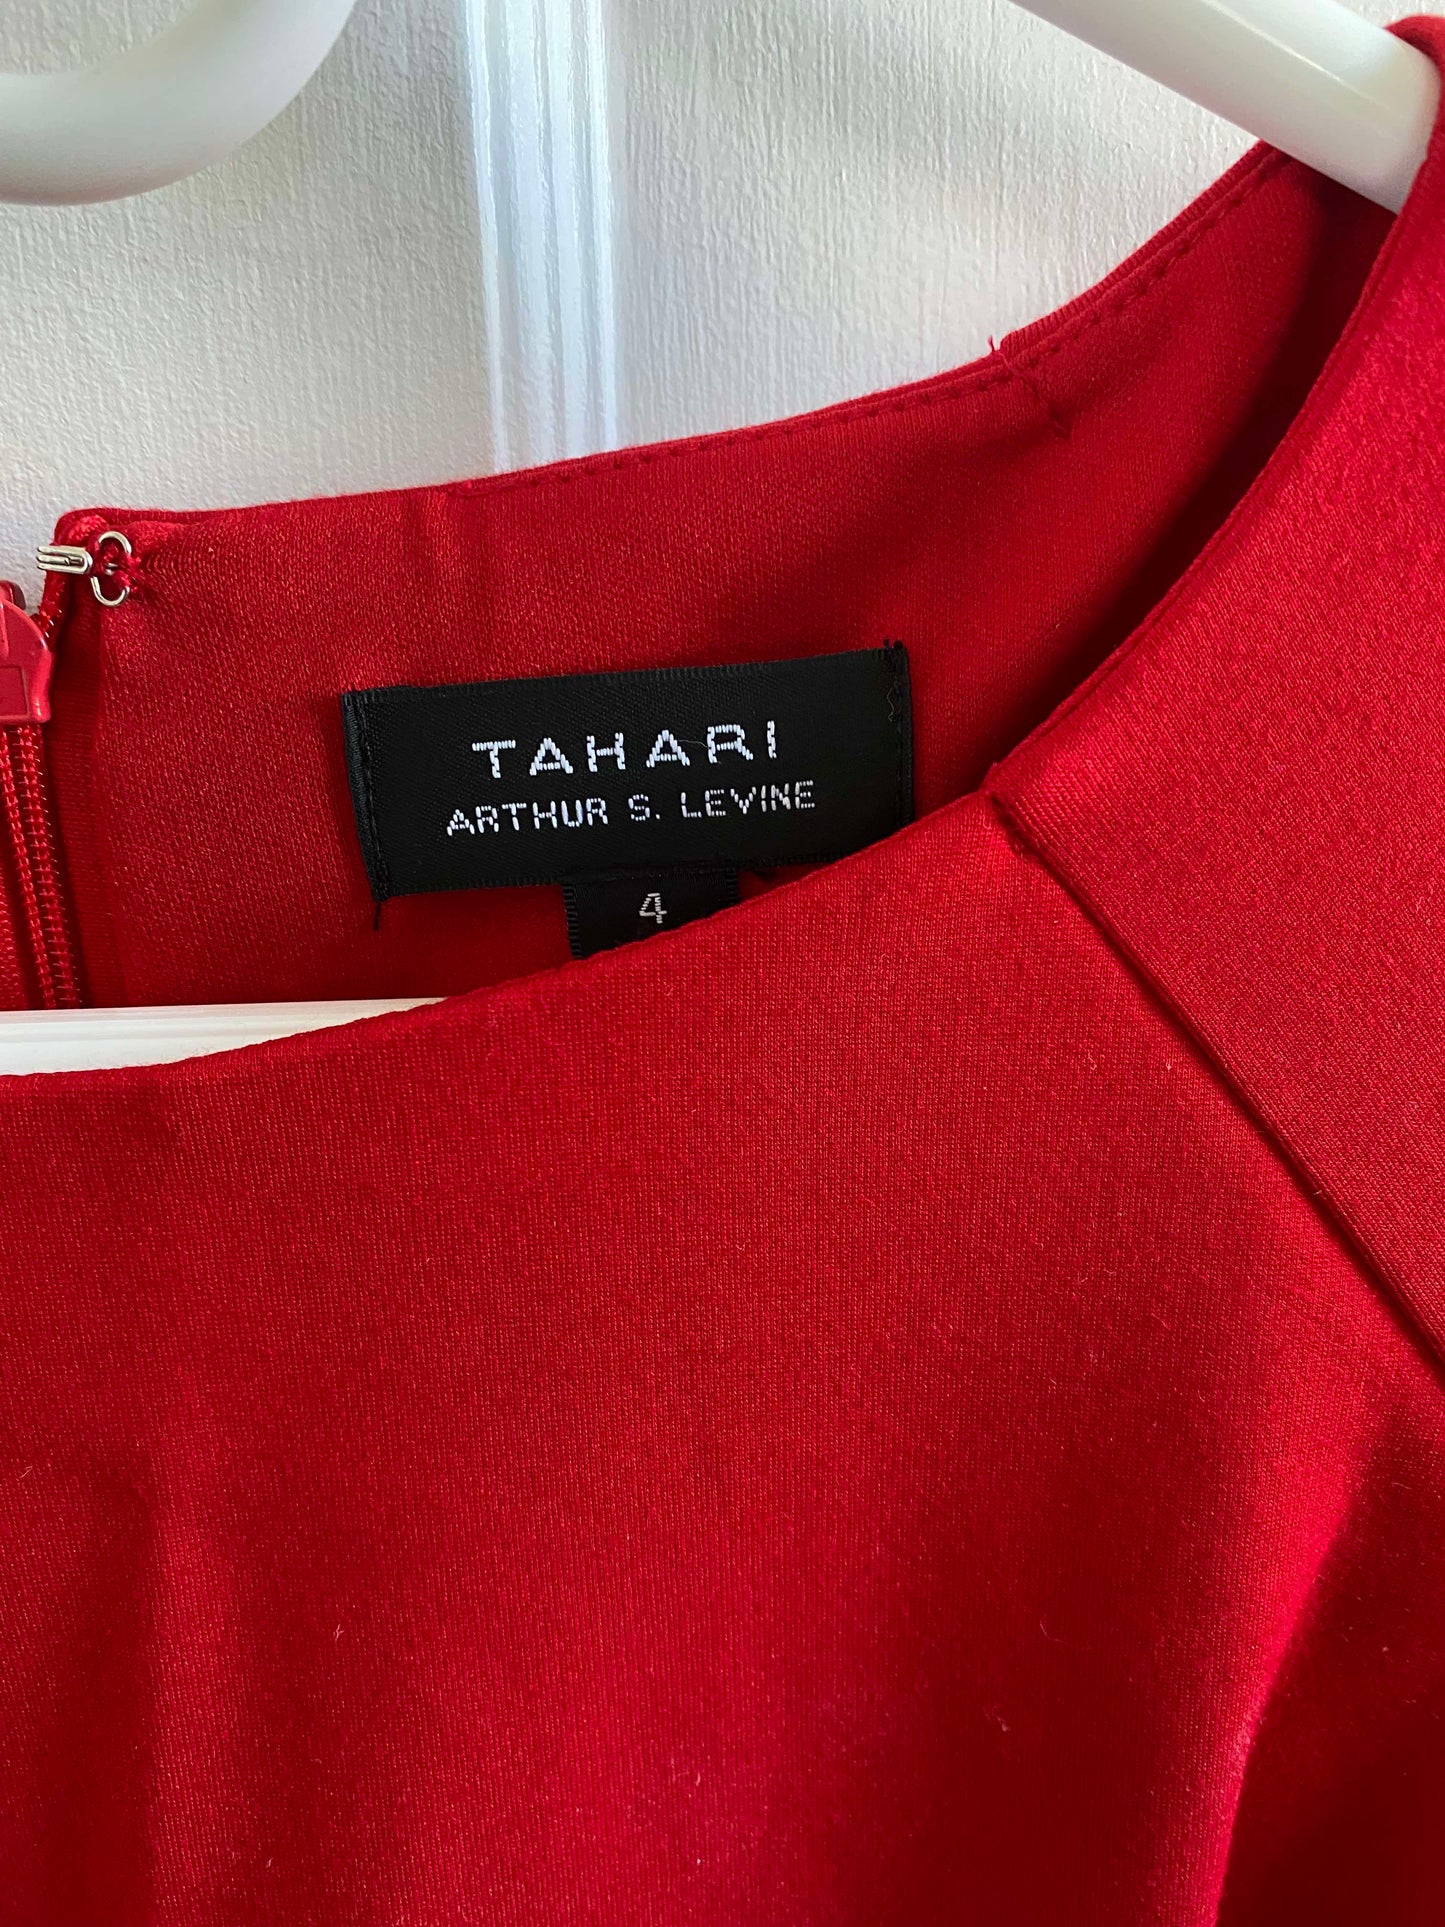 Tahari red dress, Size 4 (fits like Women's M) (NWT)